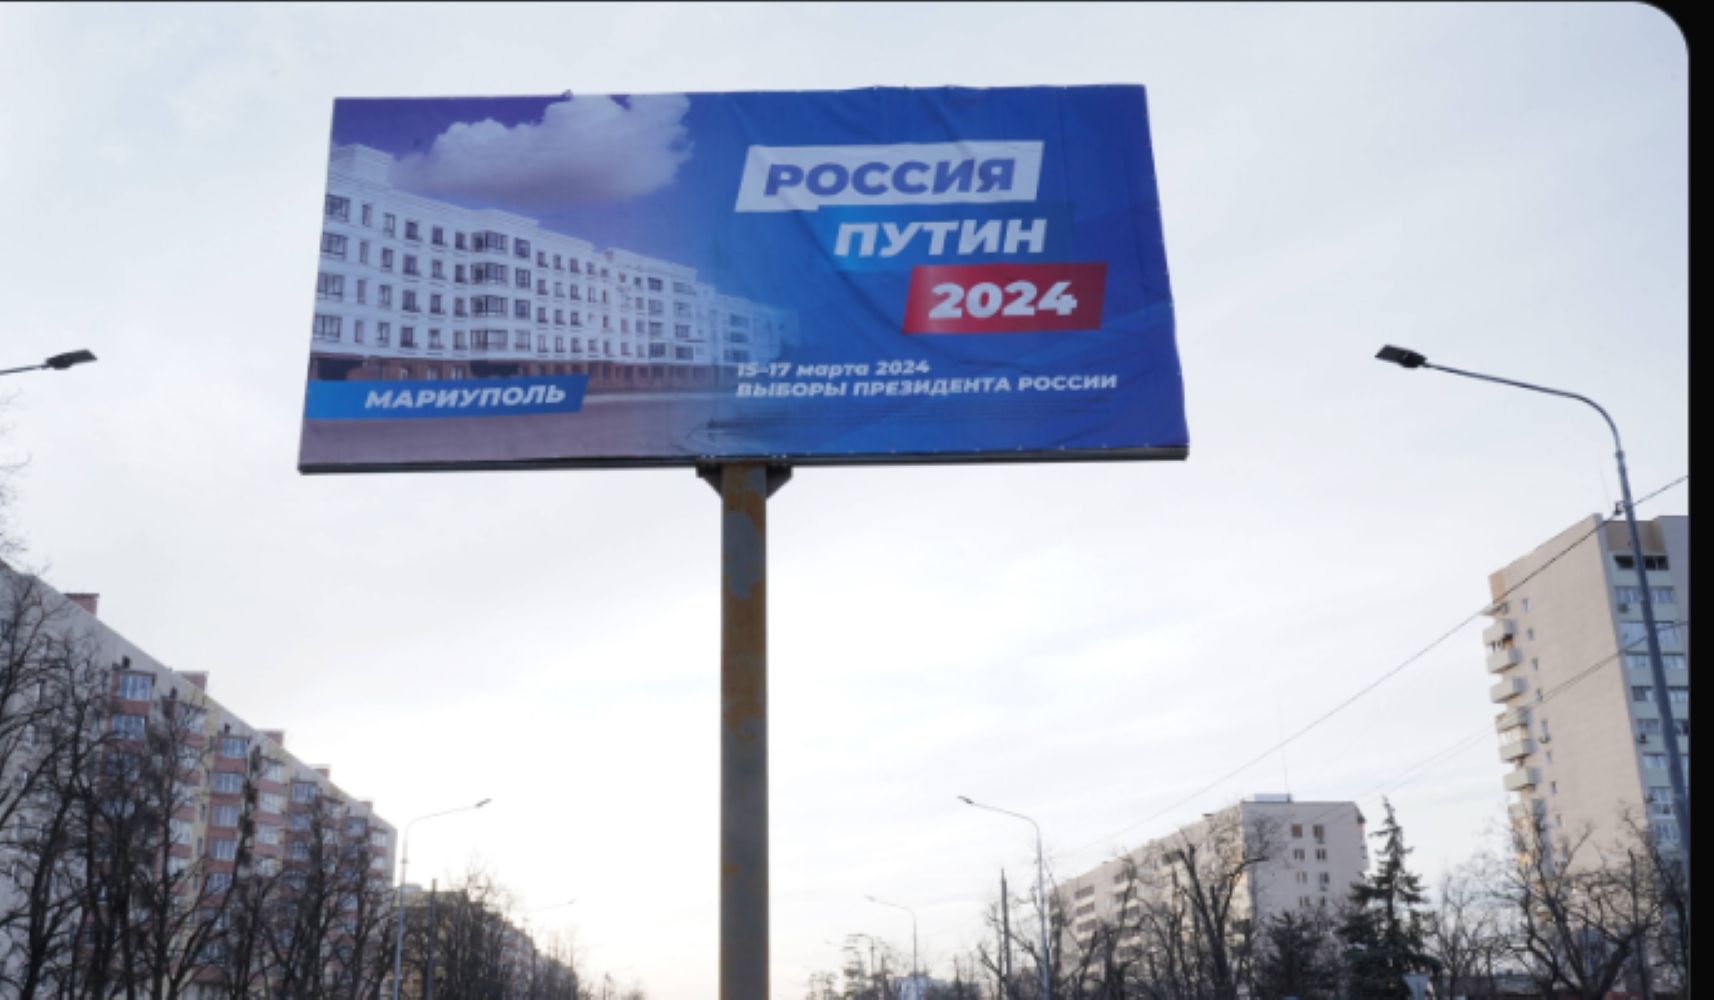 Rosyjska "szkoła korupcji" kwitnie. Władimir Putin może być dumny